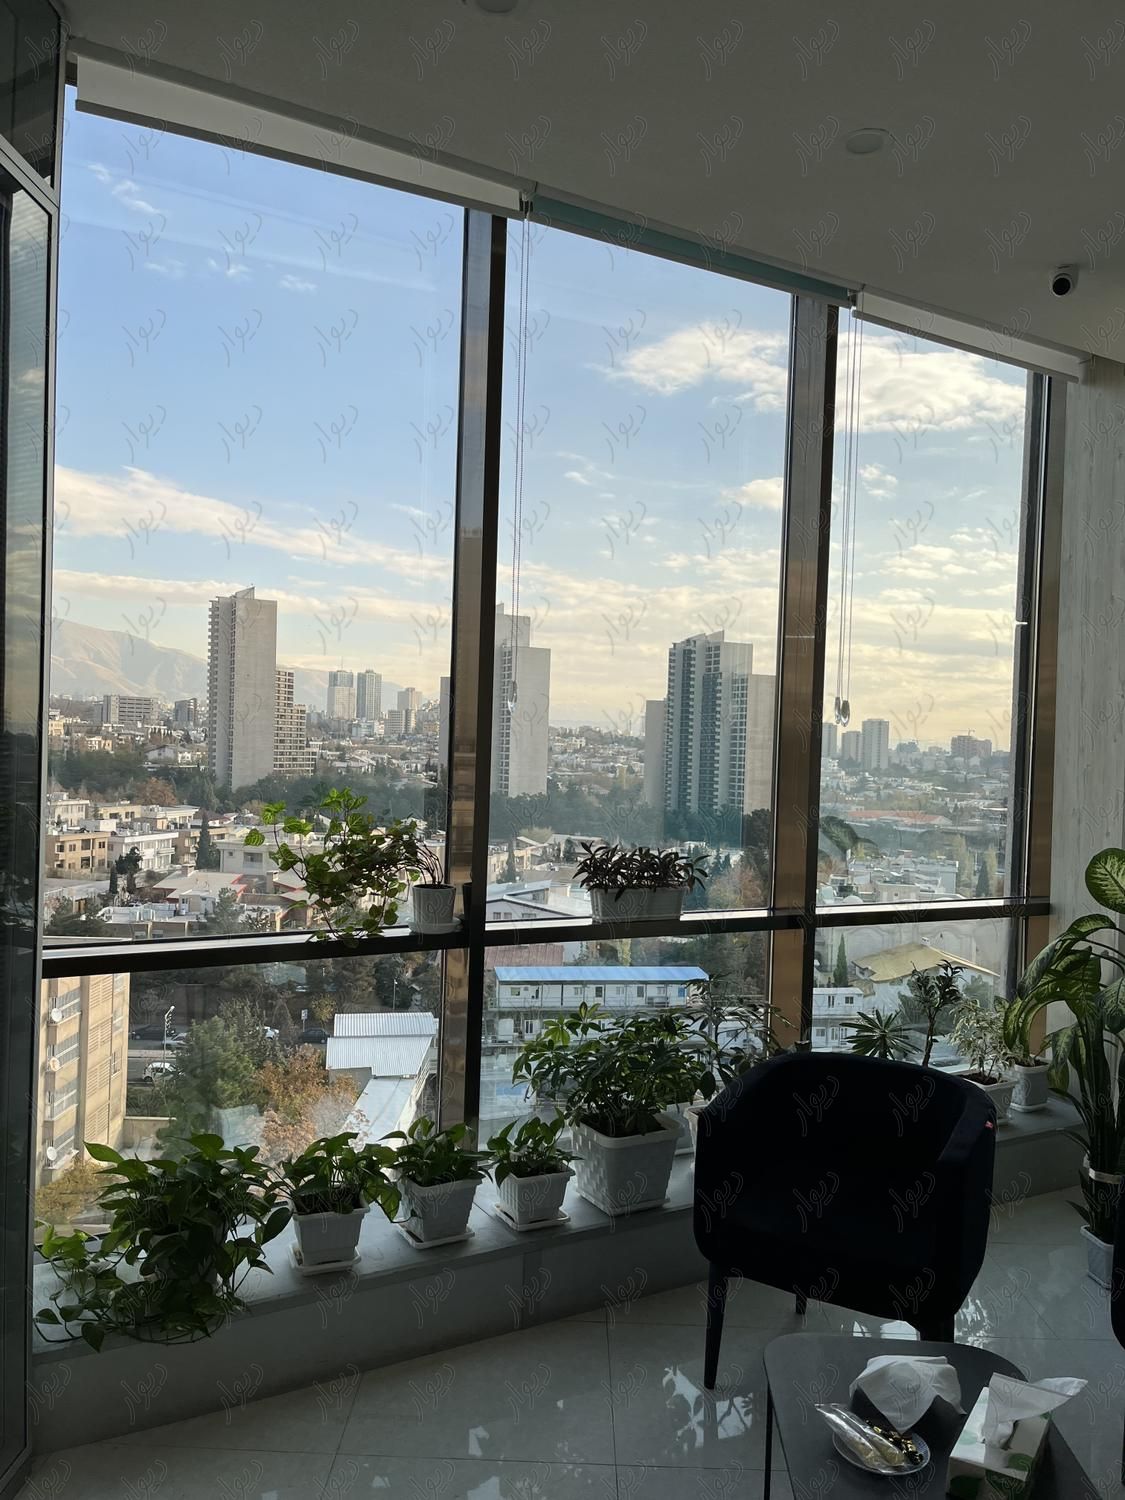 ۲۵۰ متر - سند اداری - ۱ طبقه پارکینگ|فروش دفتر کار، دفتر اداری و مطب|تهران, دریا|دیوار